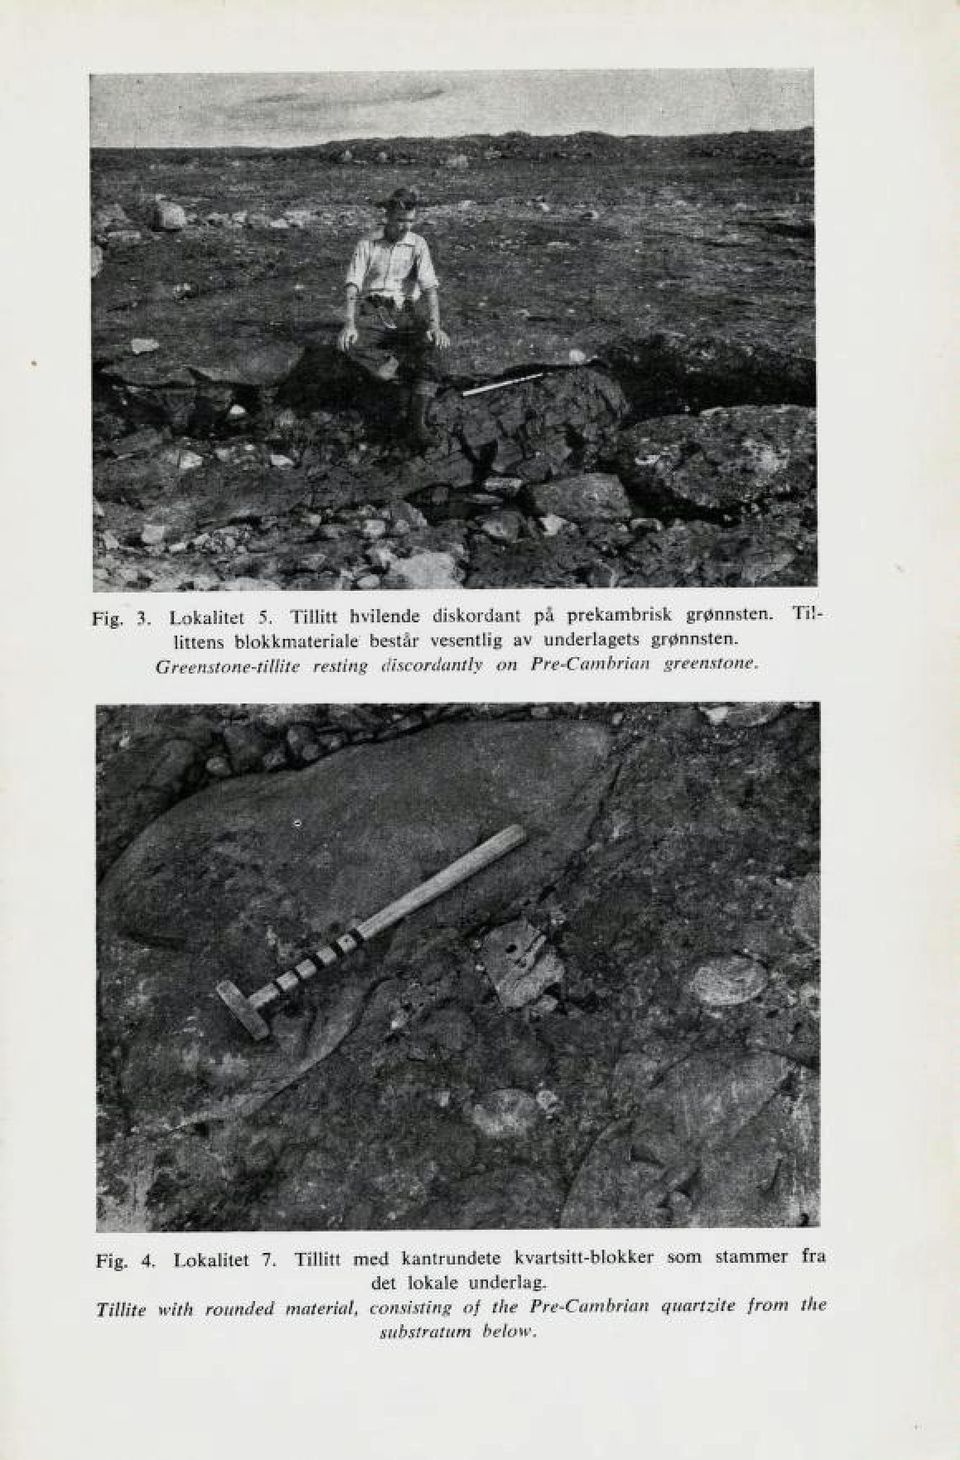 Greenstone-tillite resting discordantly on Pre-Cambrian greenstone. Fig. 4. Lokalitet 7.